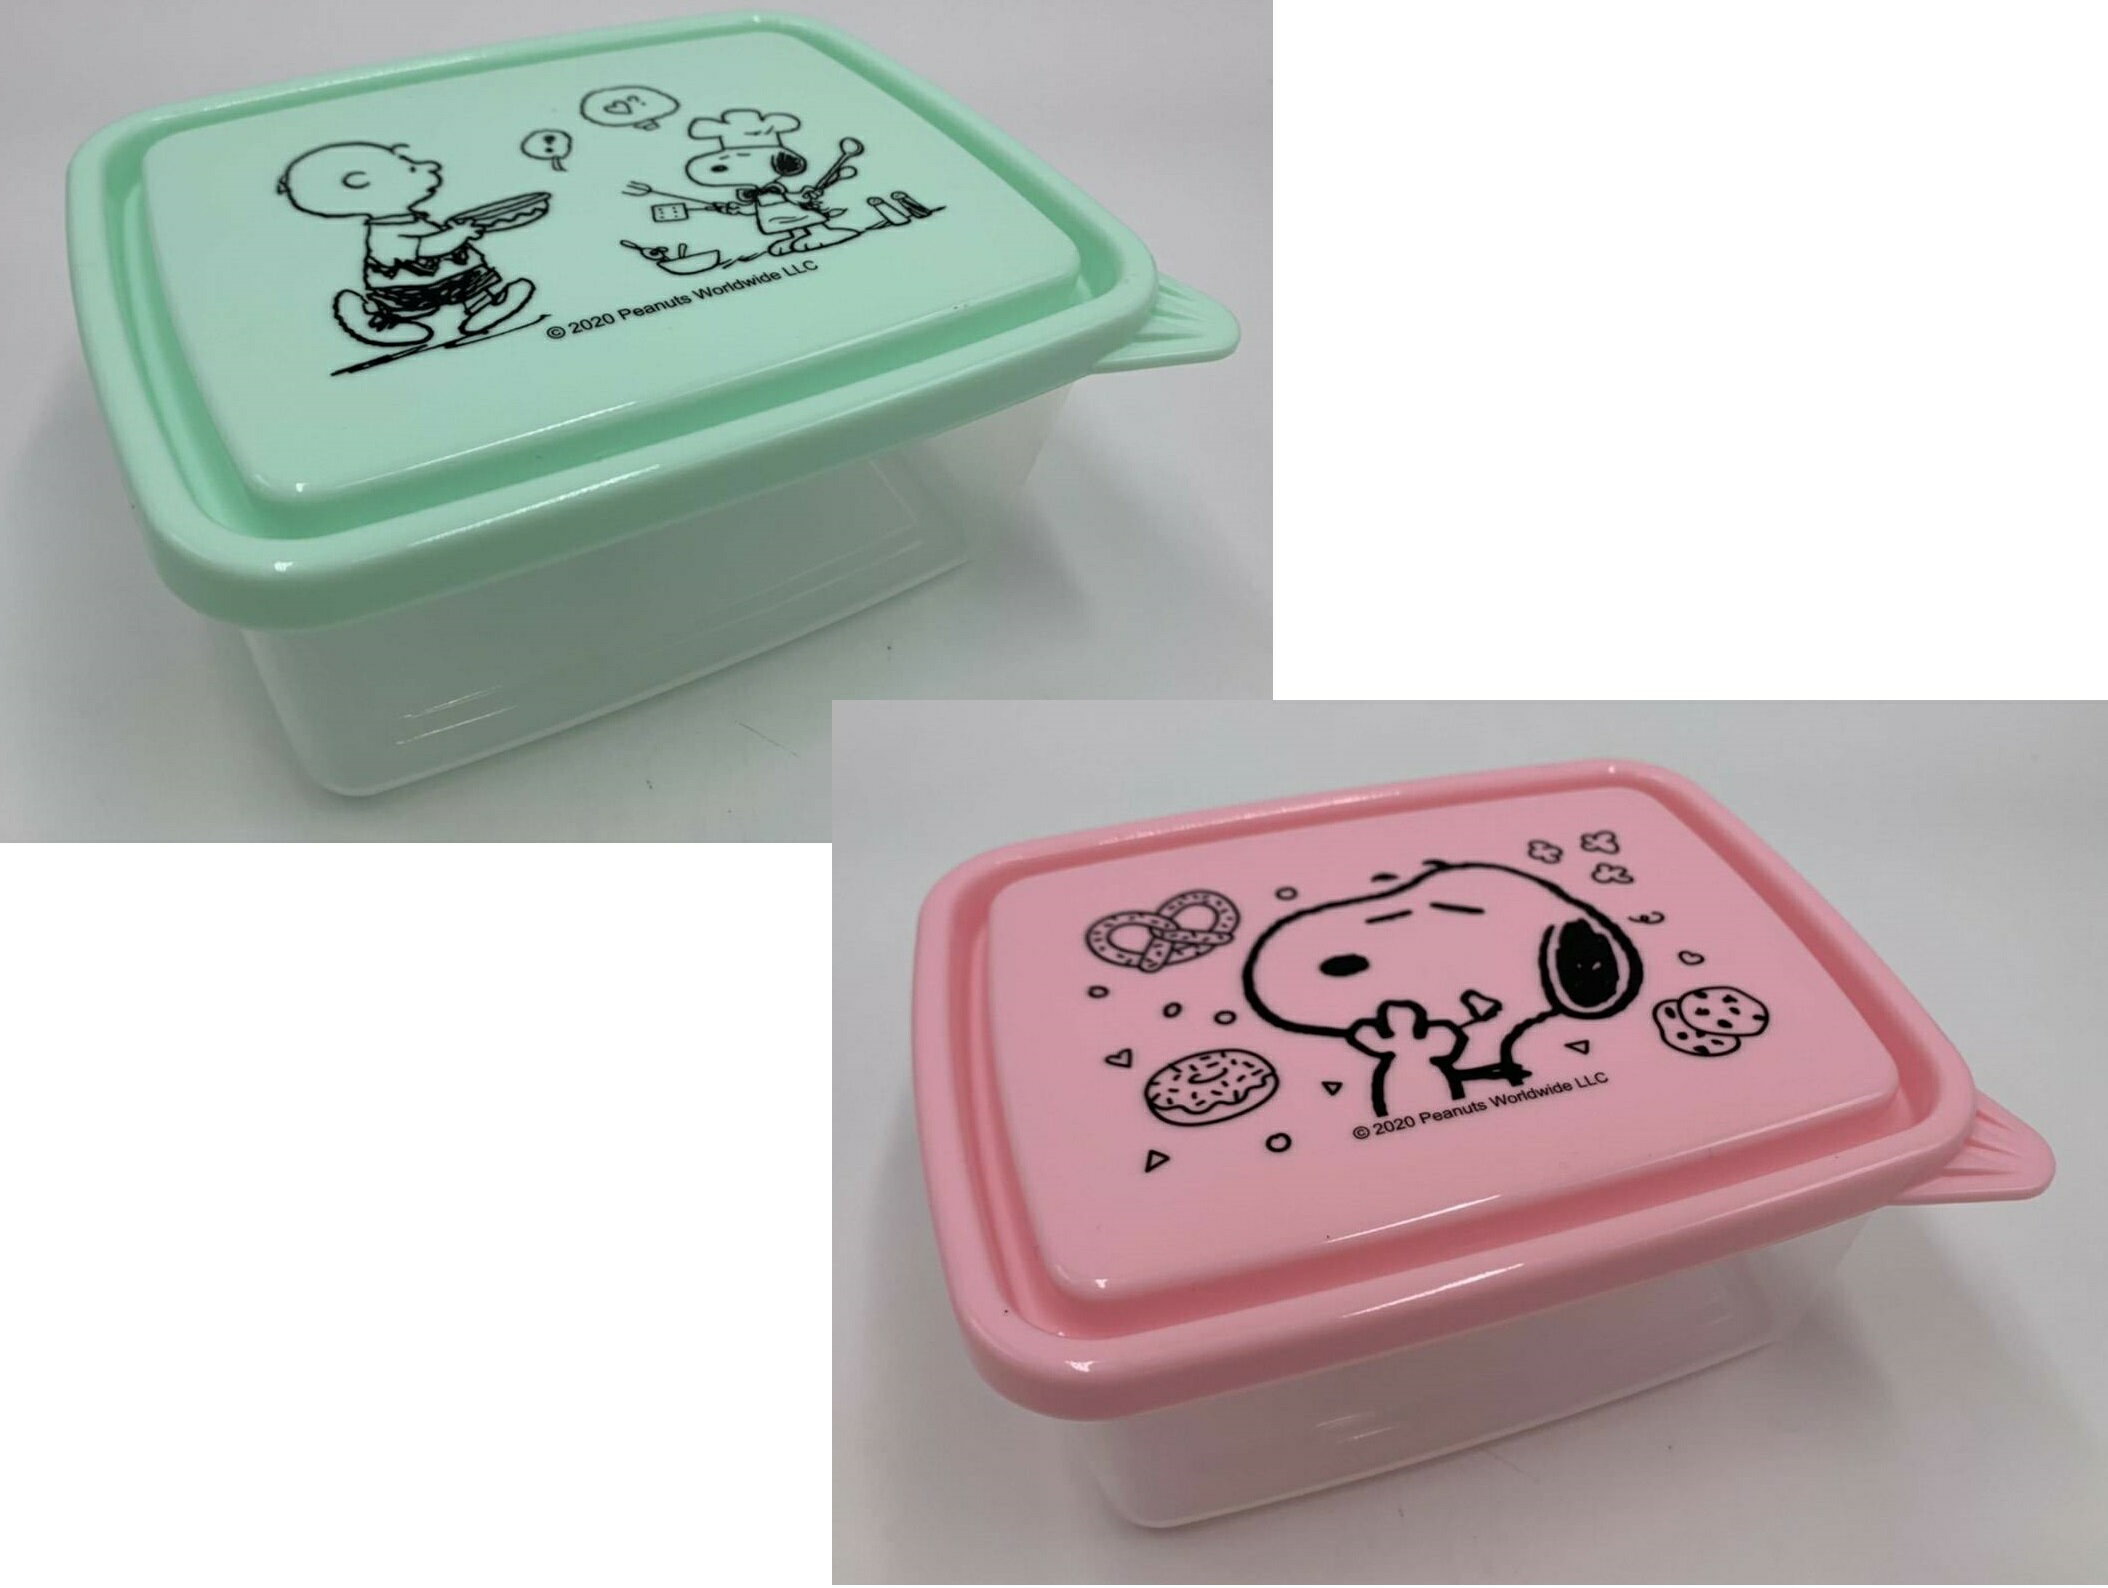 大賀屋 台灣製 正版 綠 史努比 便當盒 SGS檢驗 保鮮盒 午餐盒 置物盒 餐盒 水果盒 飯盒 T00120762